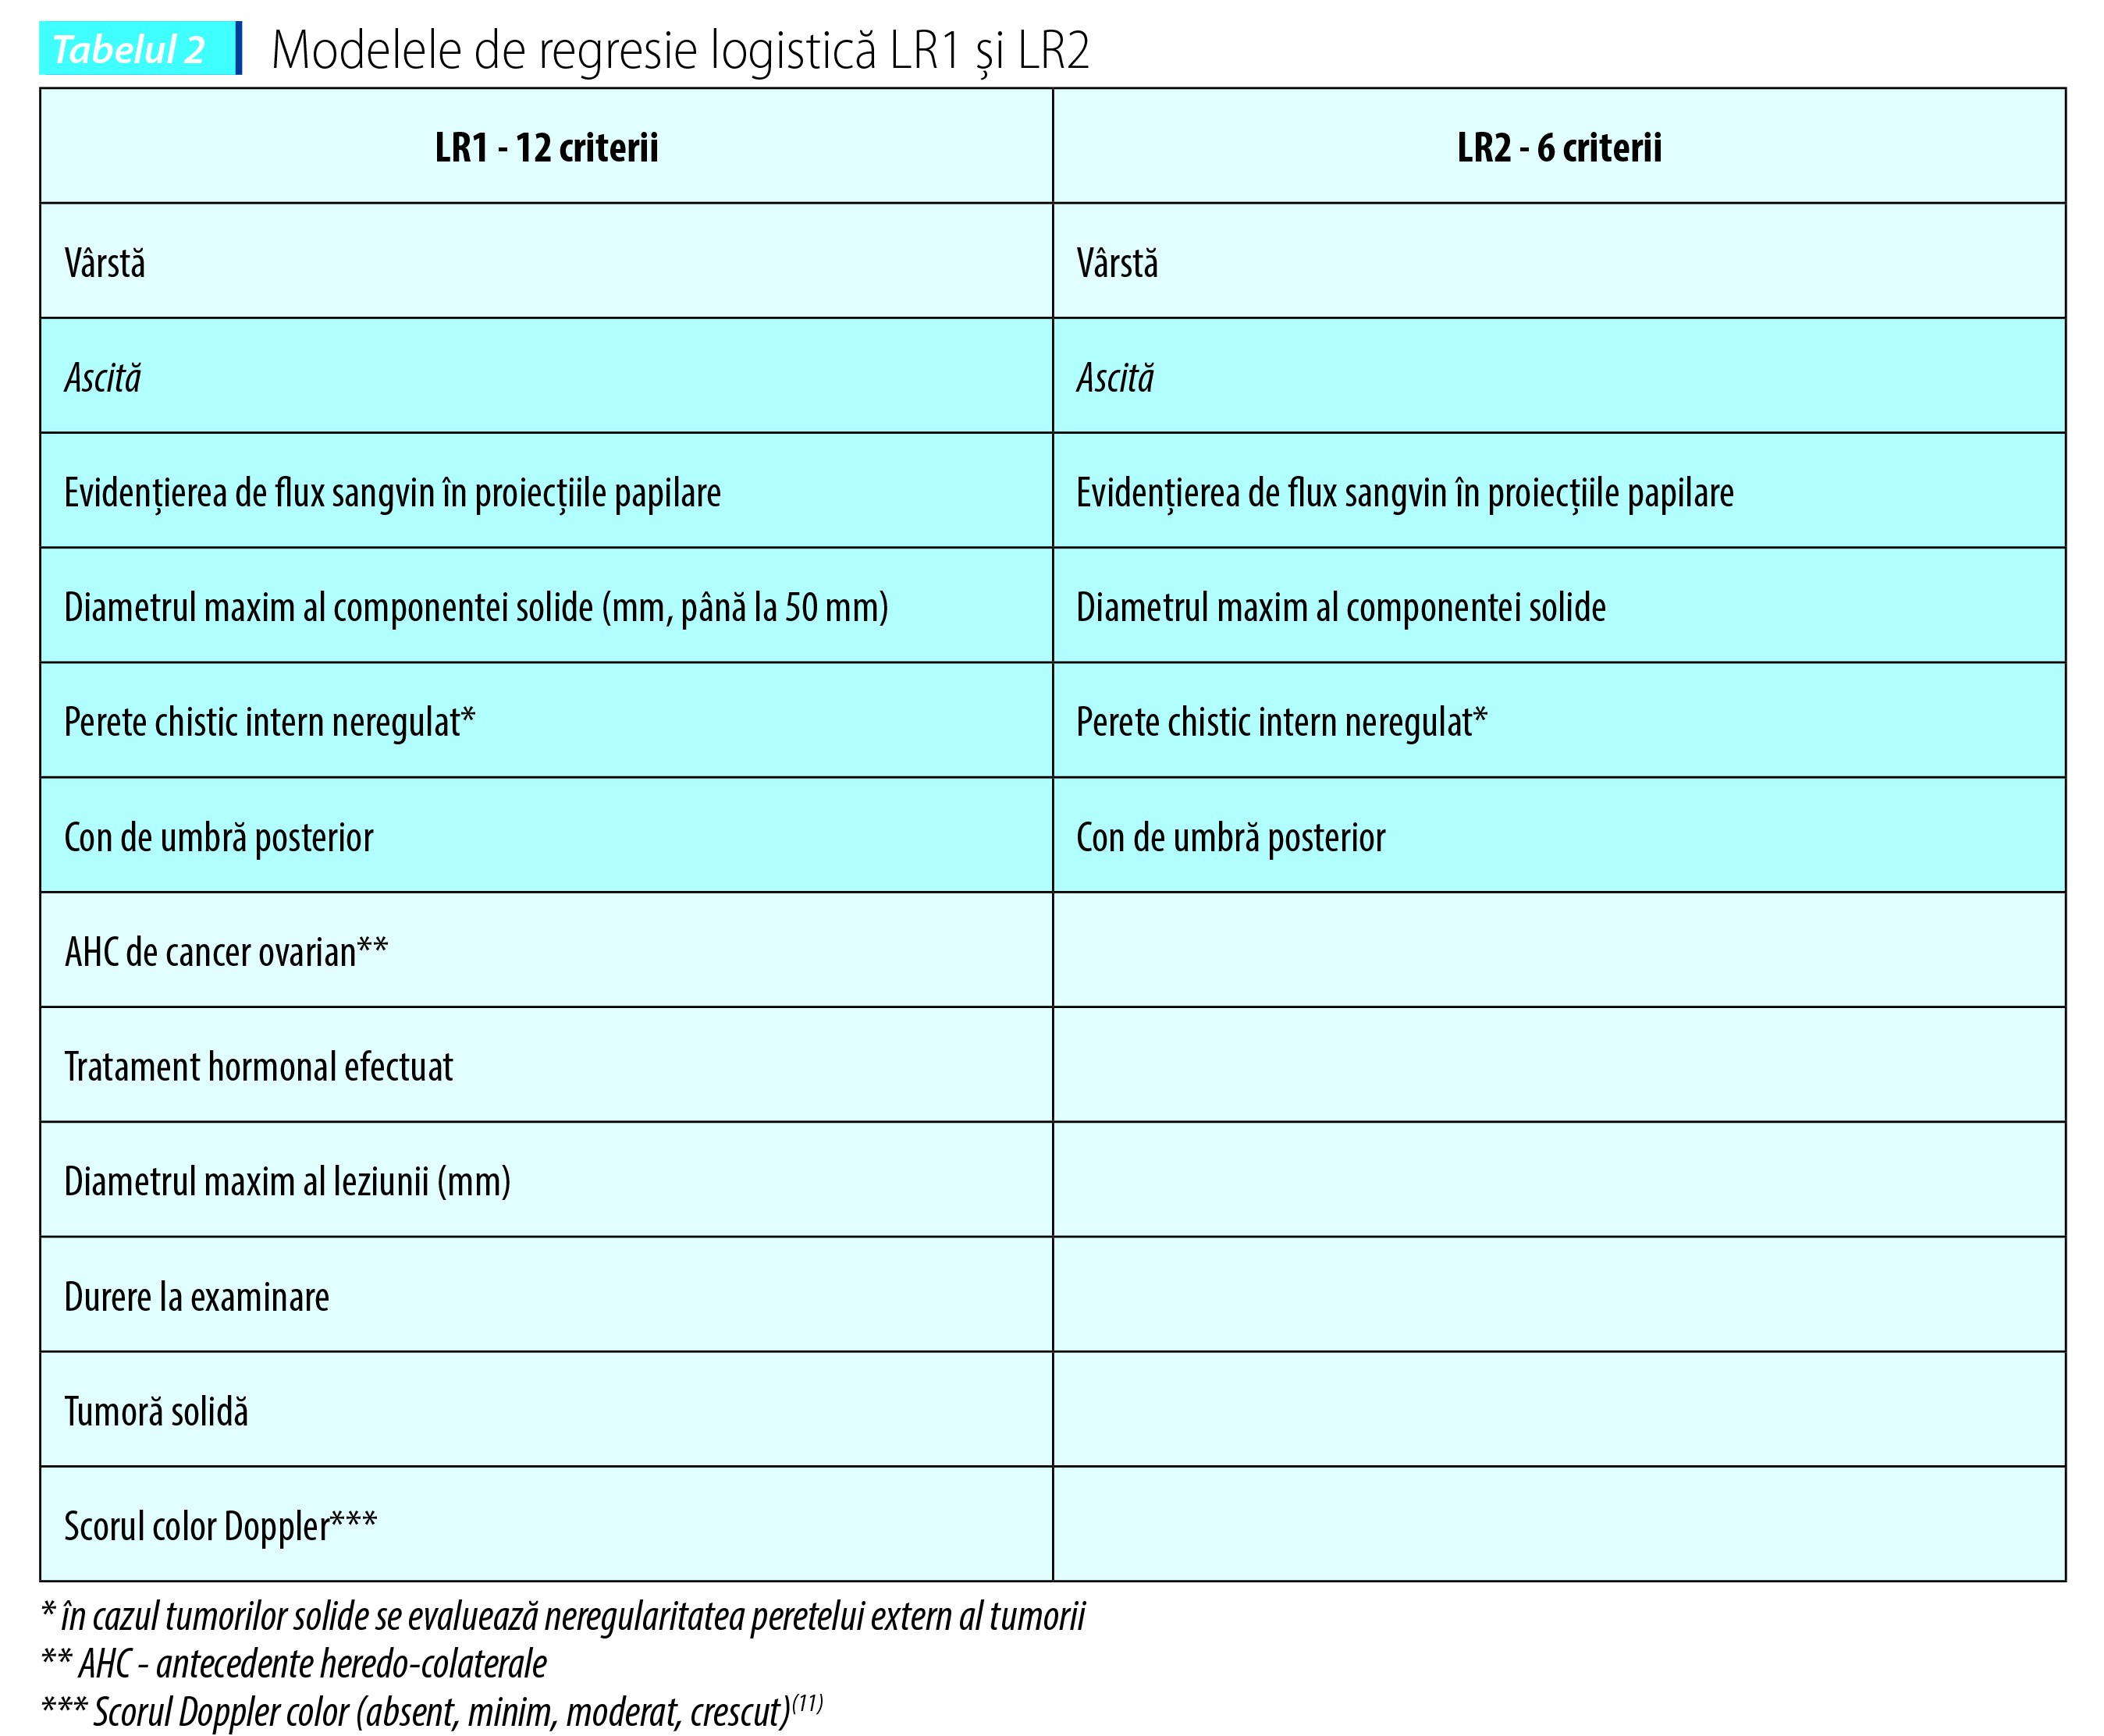 Tabelul 2.  Modelele de regresie logistică LR1 şi LR2